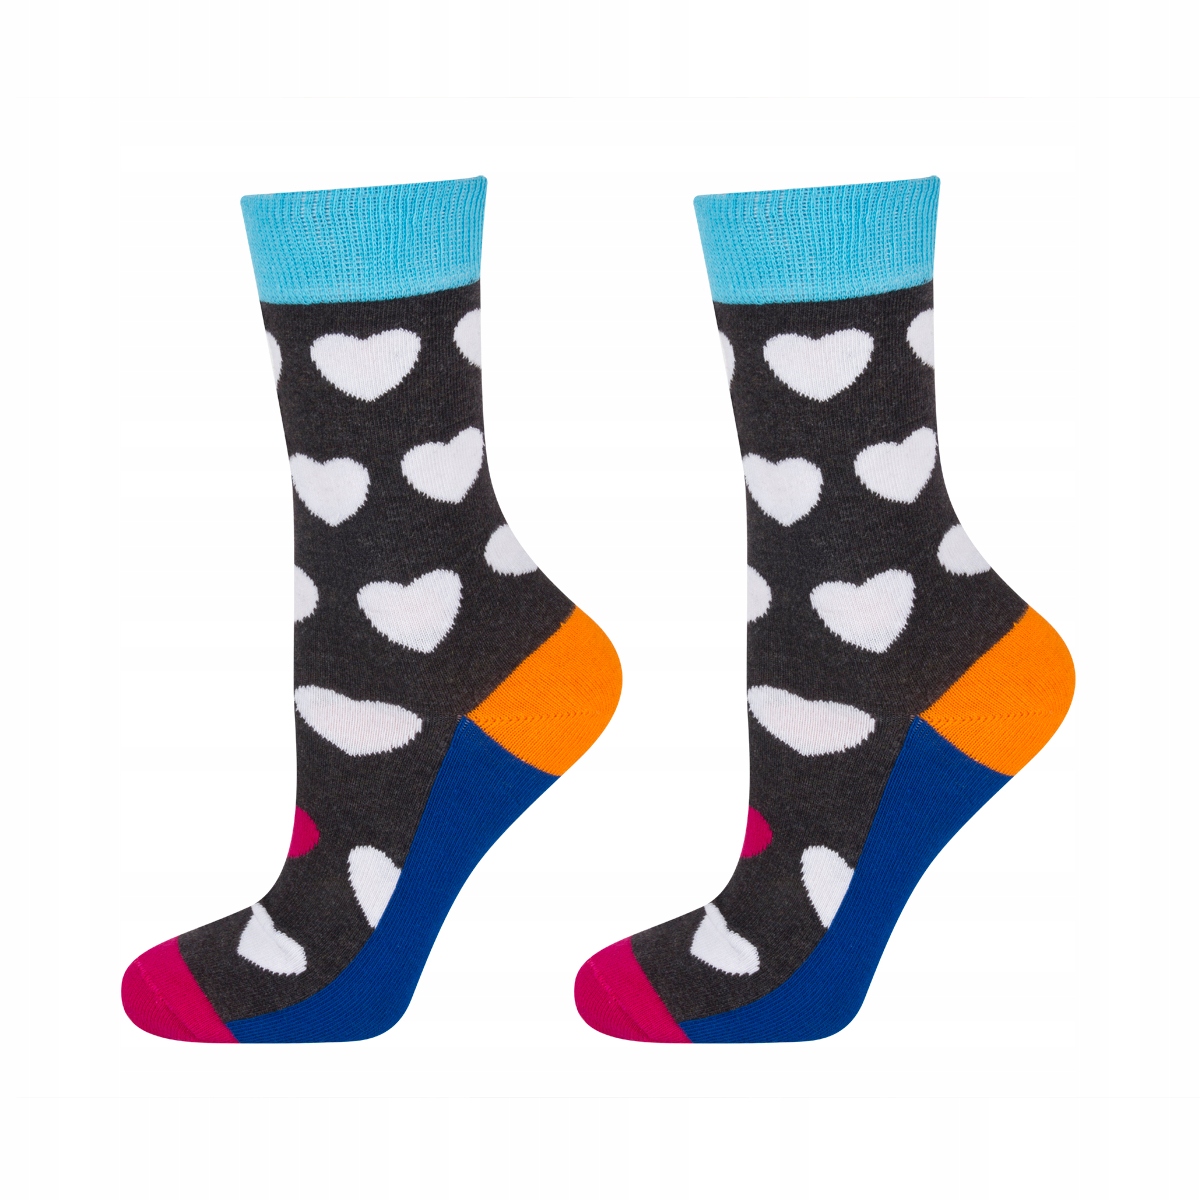 - | 5,99 SOXO Online-Shop Socken STUFF Kinder Herzen SOXO € mit GOOD